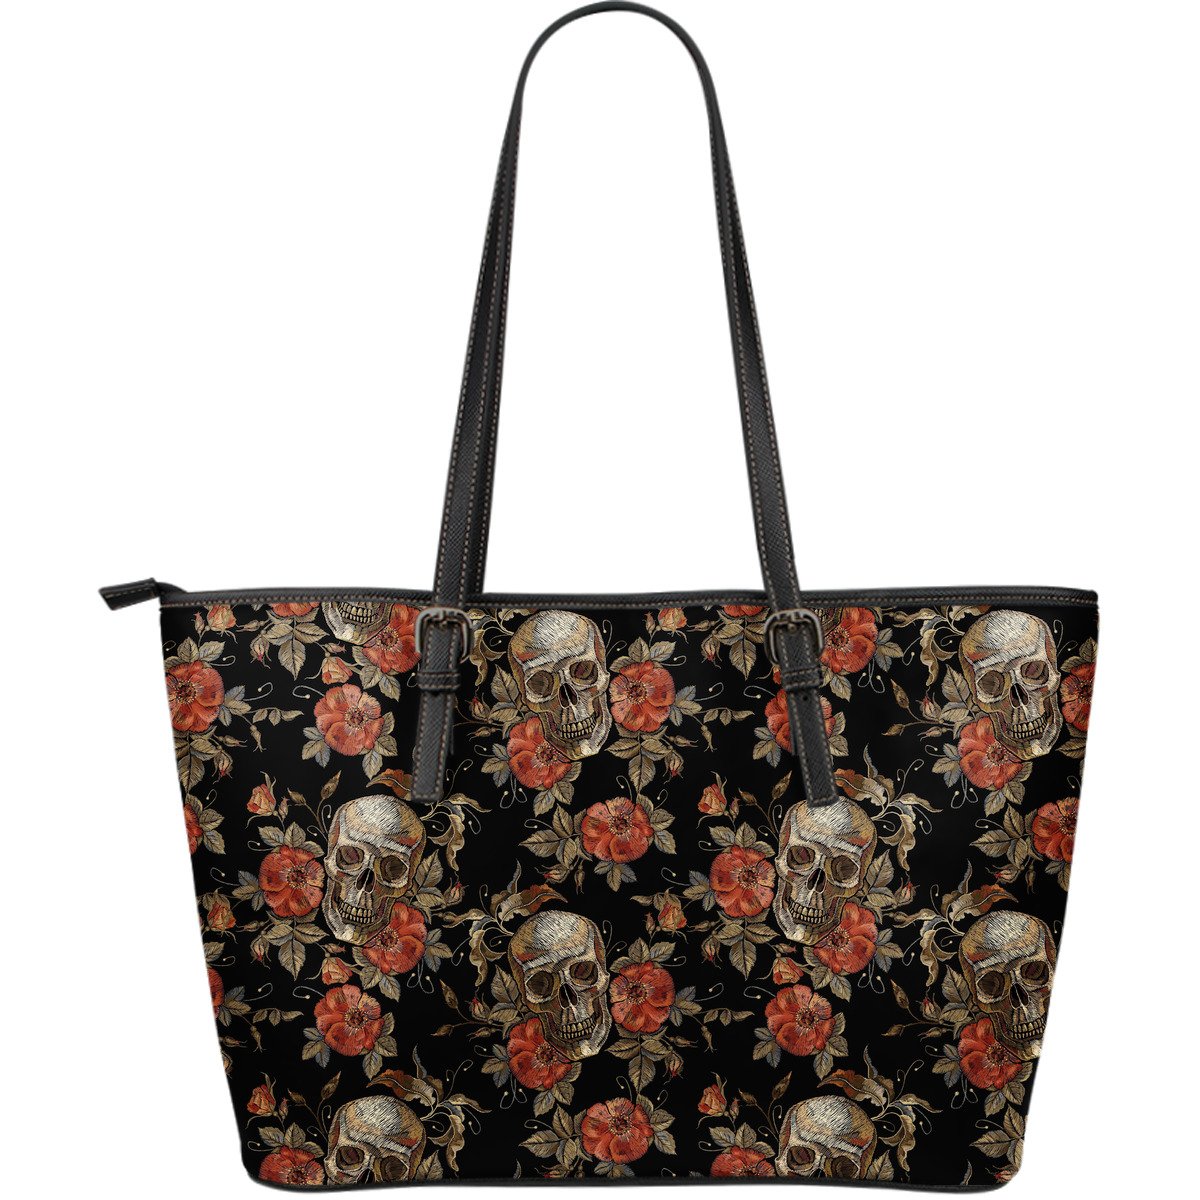 Vintage Floral Skull Pattern Print Leather Tote Bag